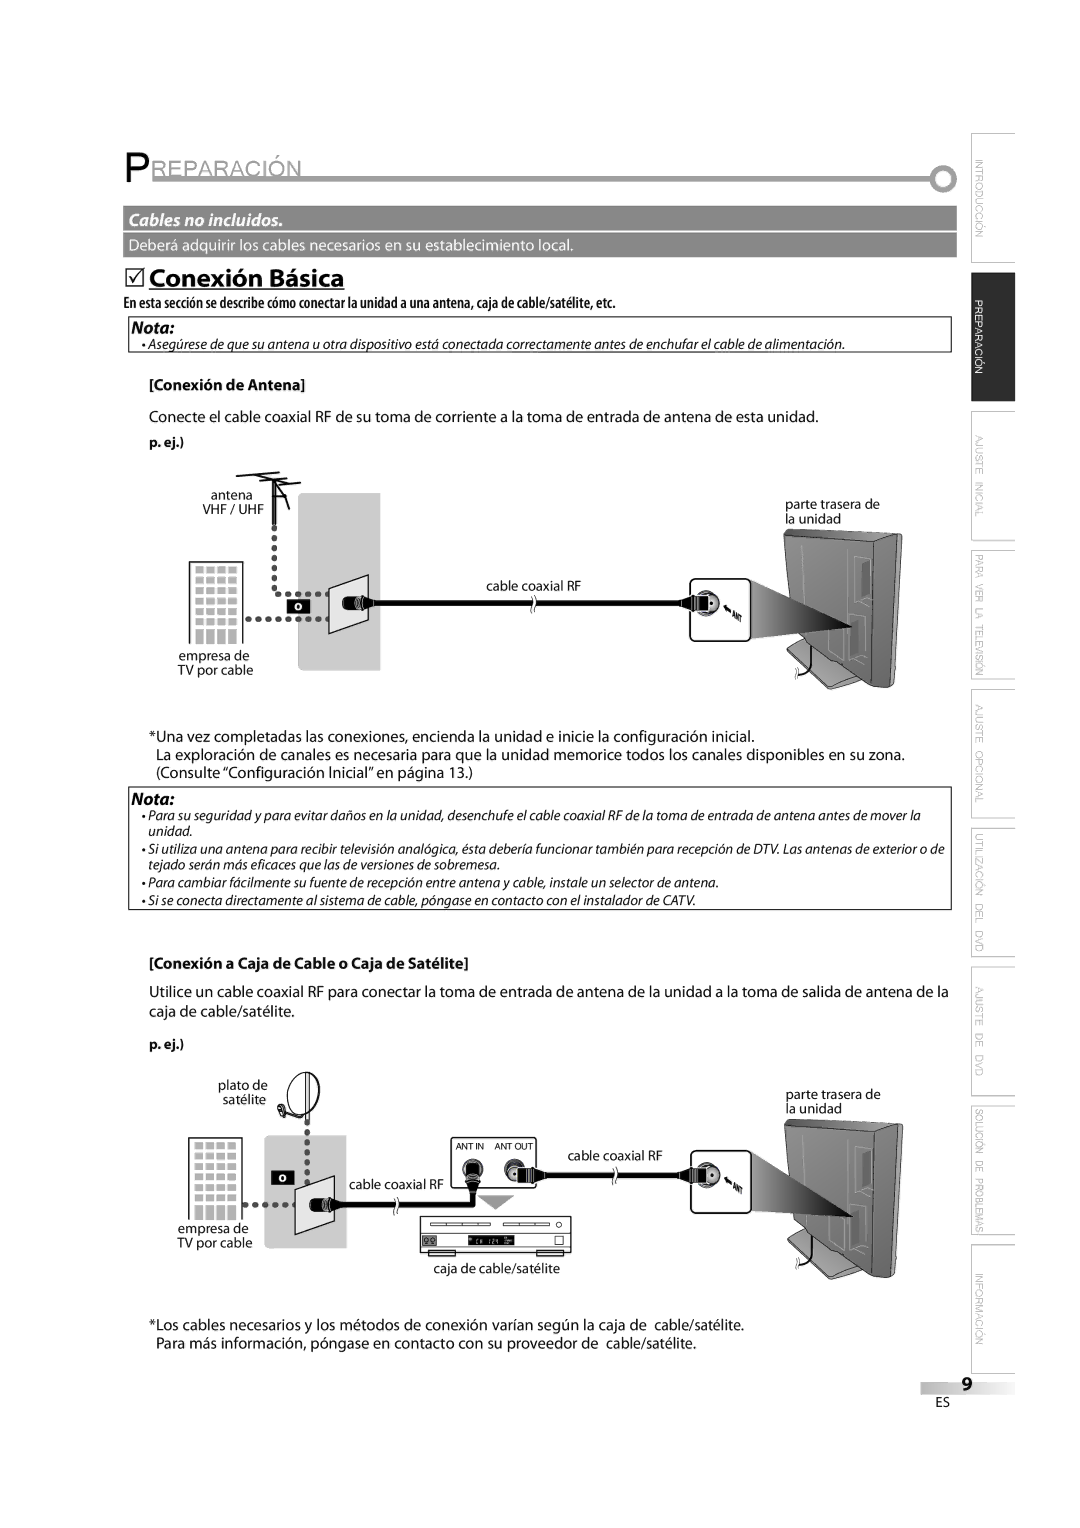 Emerson LD195EM8 7 Preparación, 5Conexión Básica, Conexión de Antena, Conexión a Caja de Cable o Caja de Satélite 